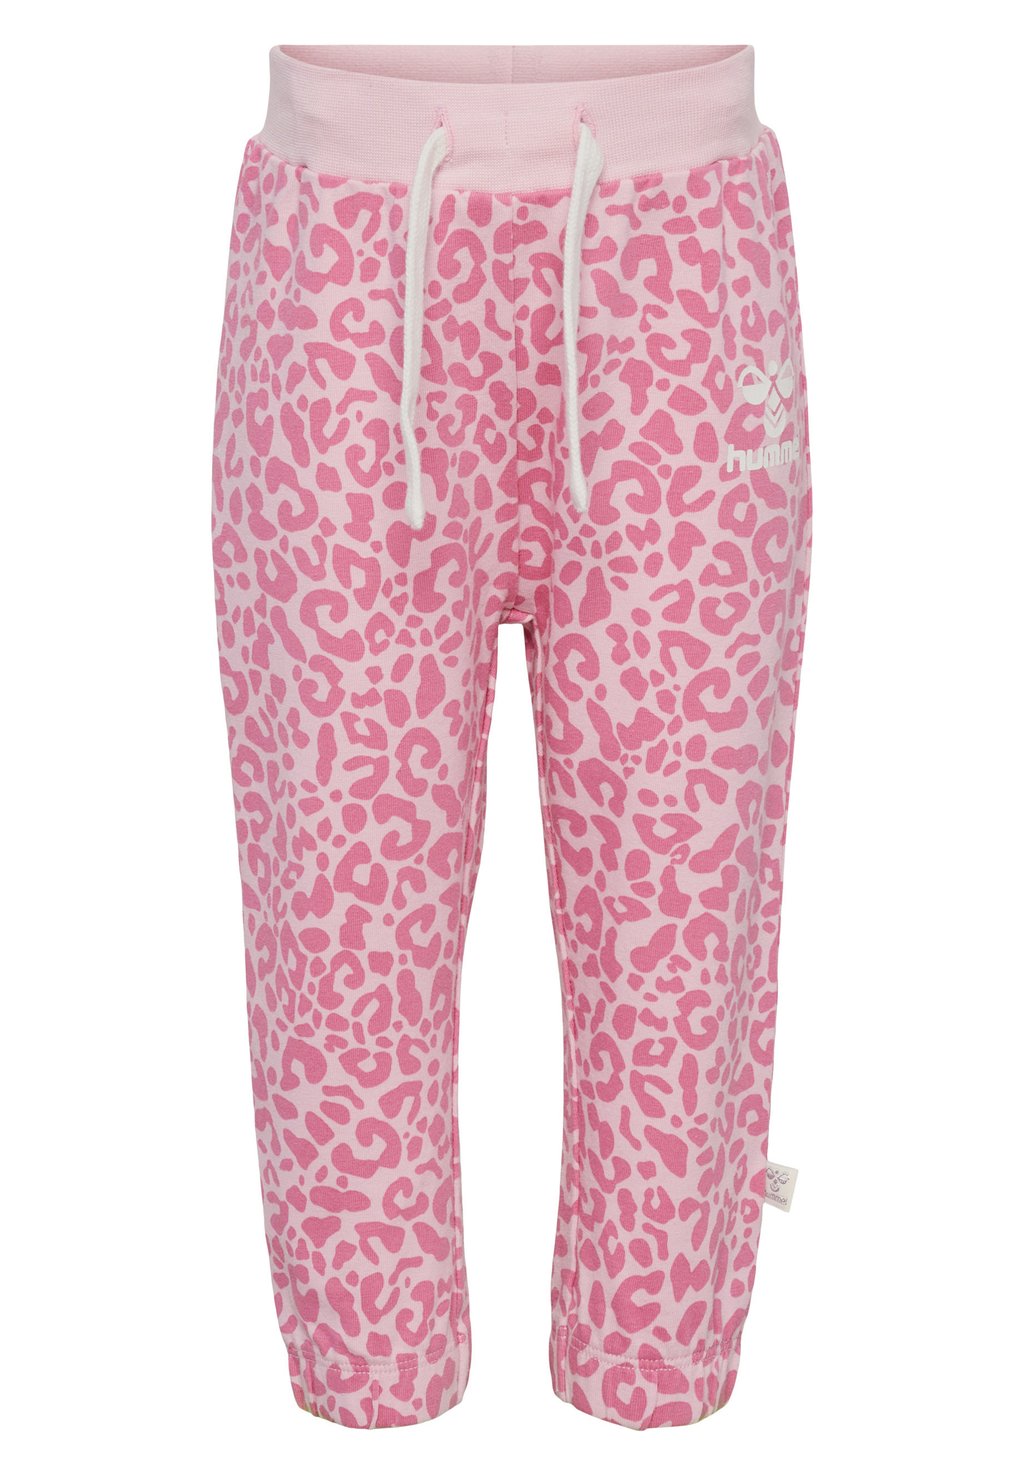 Спортивные штаны Hummel, цвет parfait pink ирис сибирский pink parfait